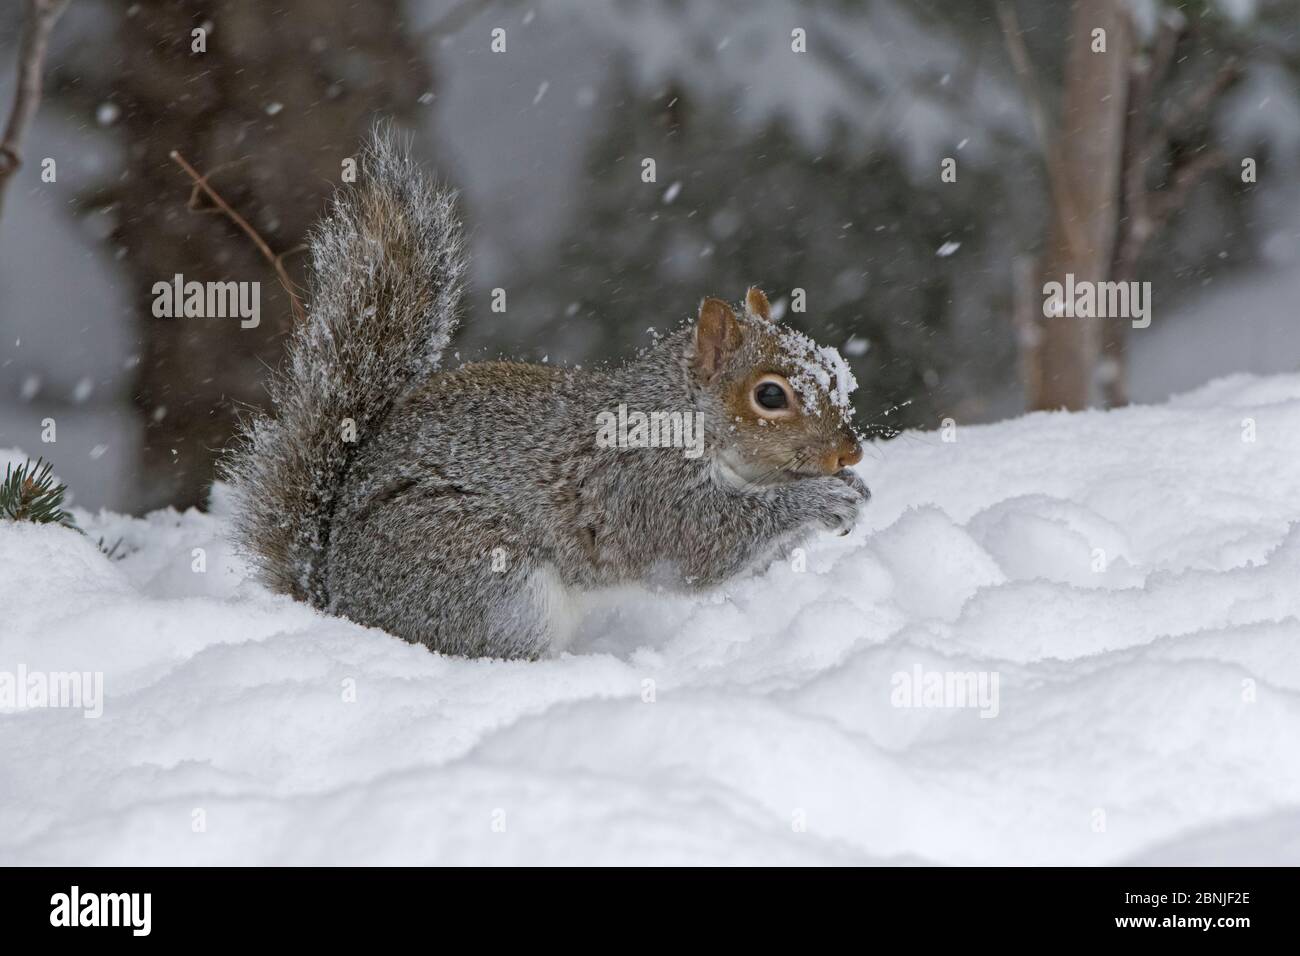 Écureuil gris de l'est (Sciurus carolinensis) se nourrissant dans la neige, Parc national de l'Acadie, Maine, États-Unis. Février. Banque D'Images